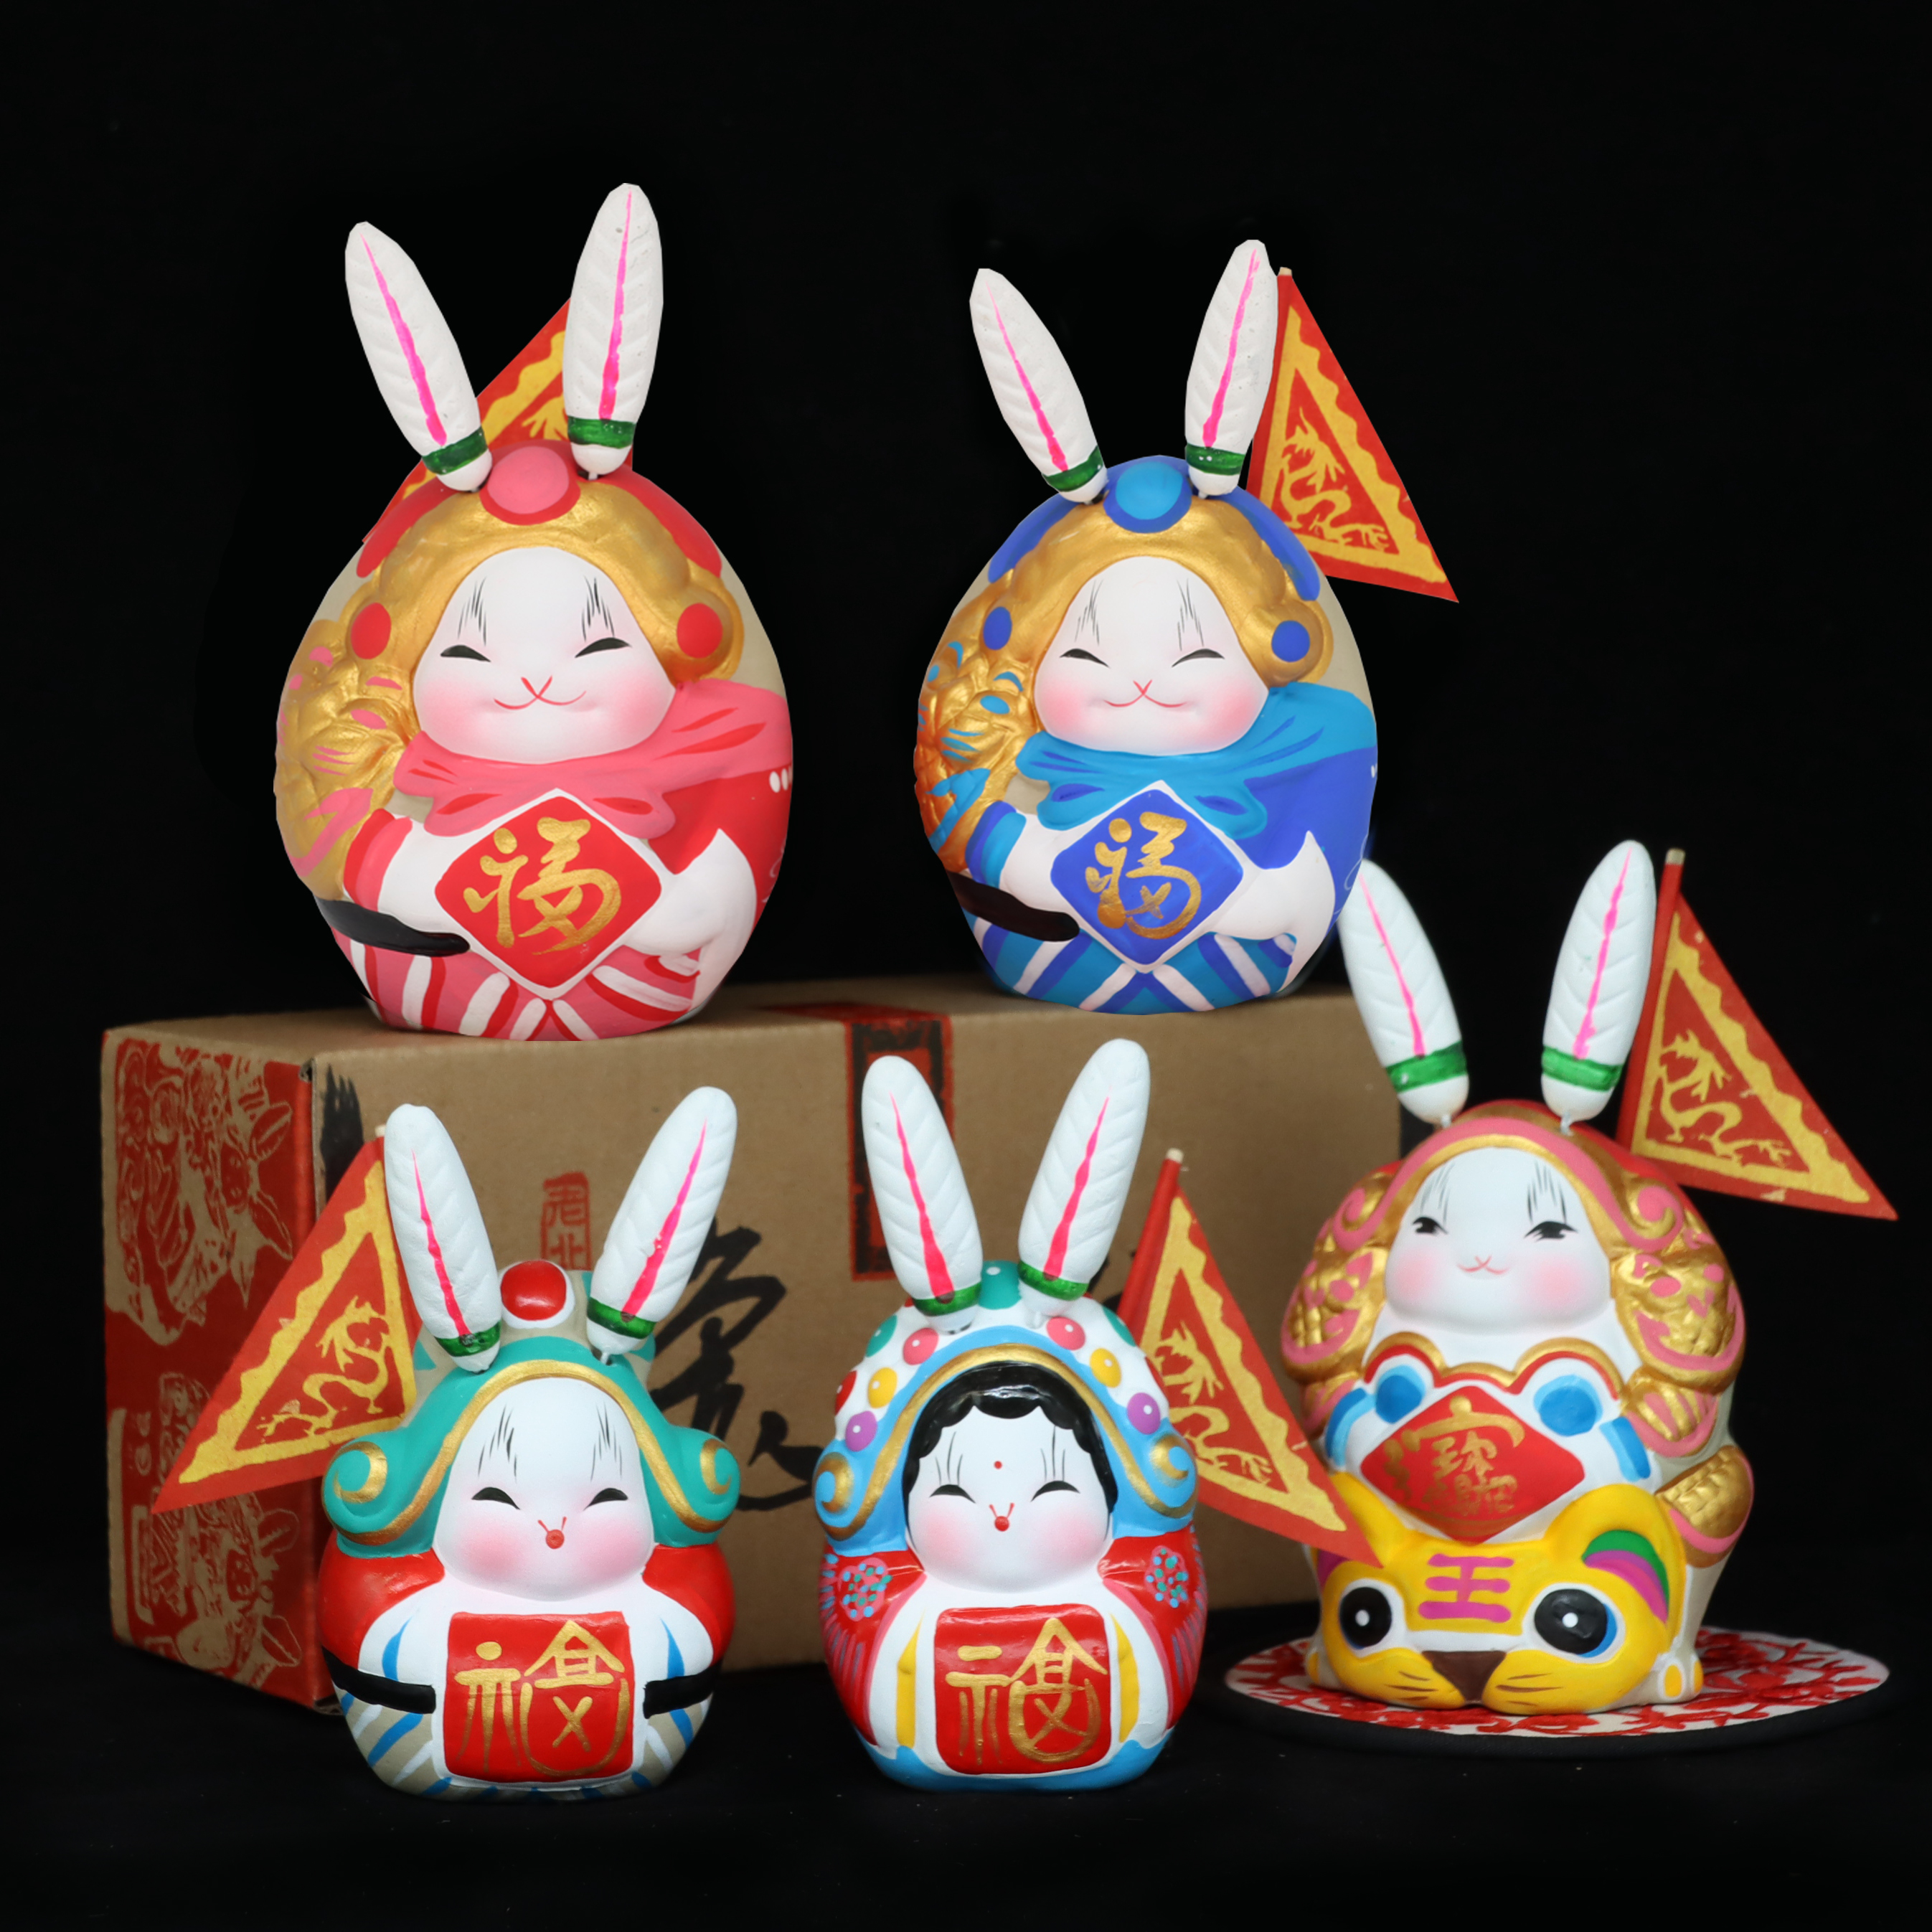 新年春节礼物北京兔爷龙年生肖泥塑手工庙会兔儿爷故宫旅游纪念品